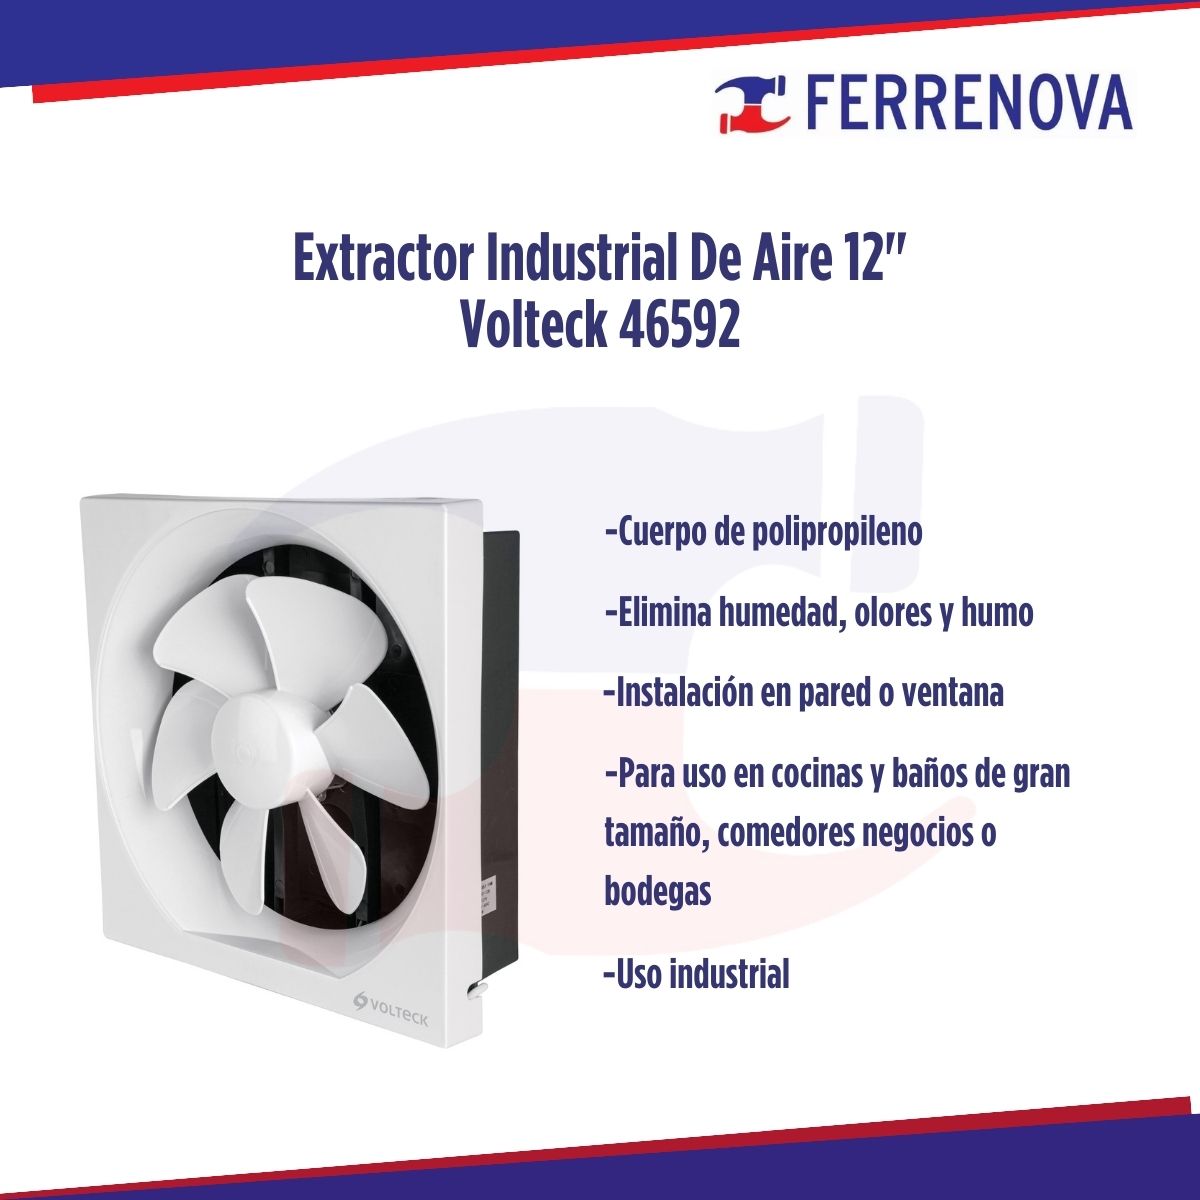 Extractor Industrial De Aire 12" Volteck 46592